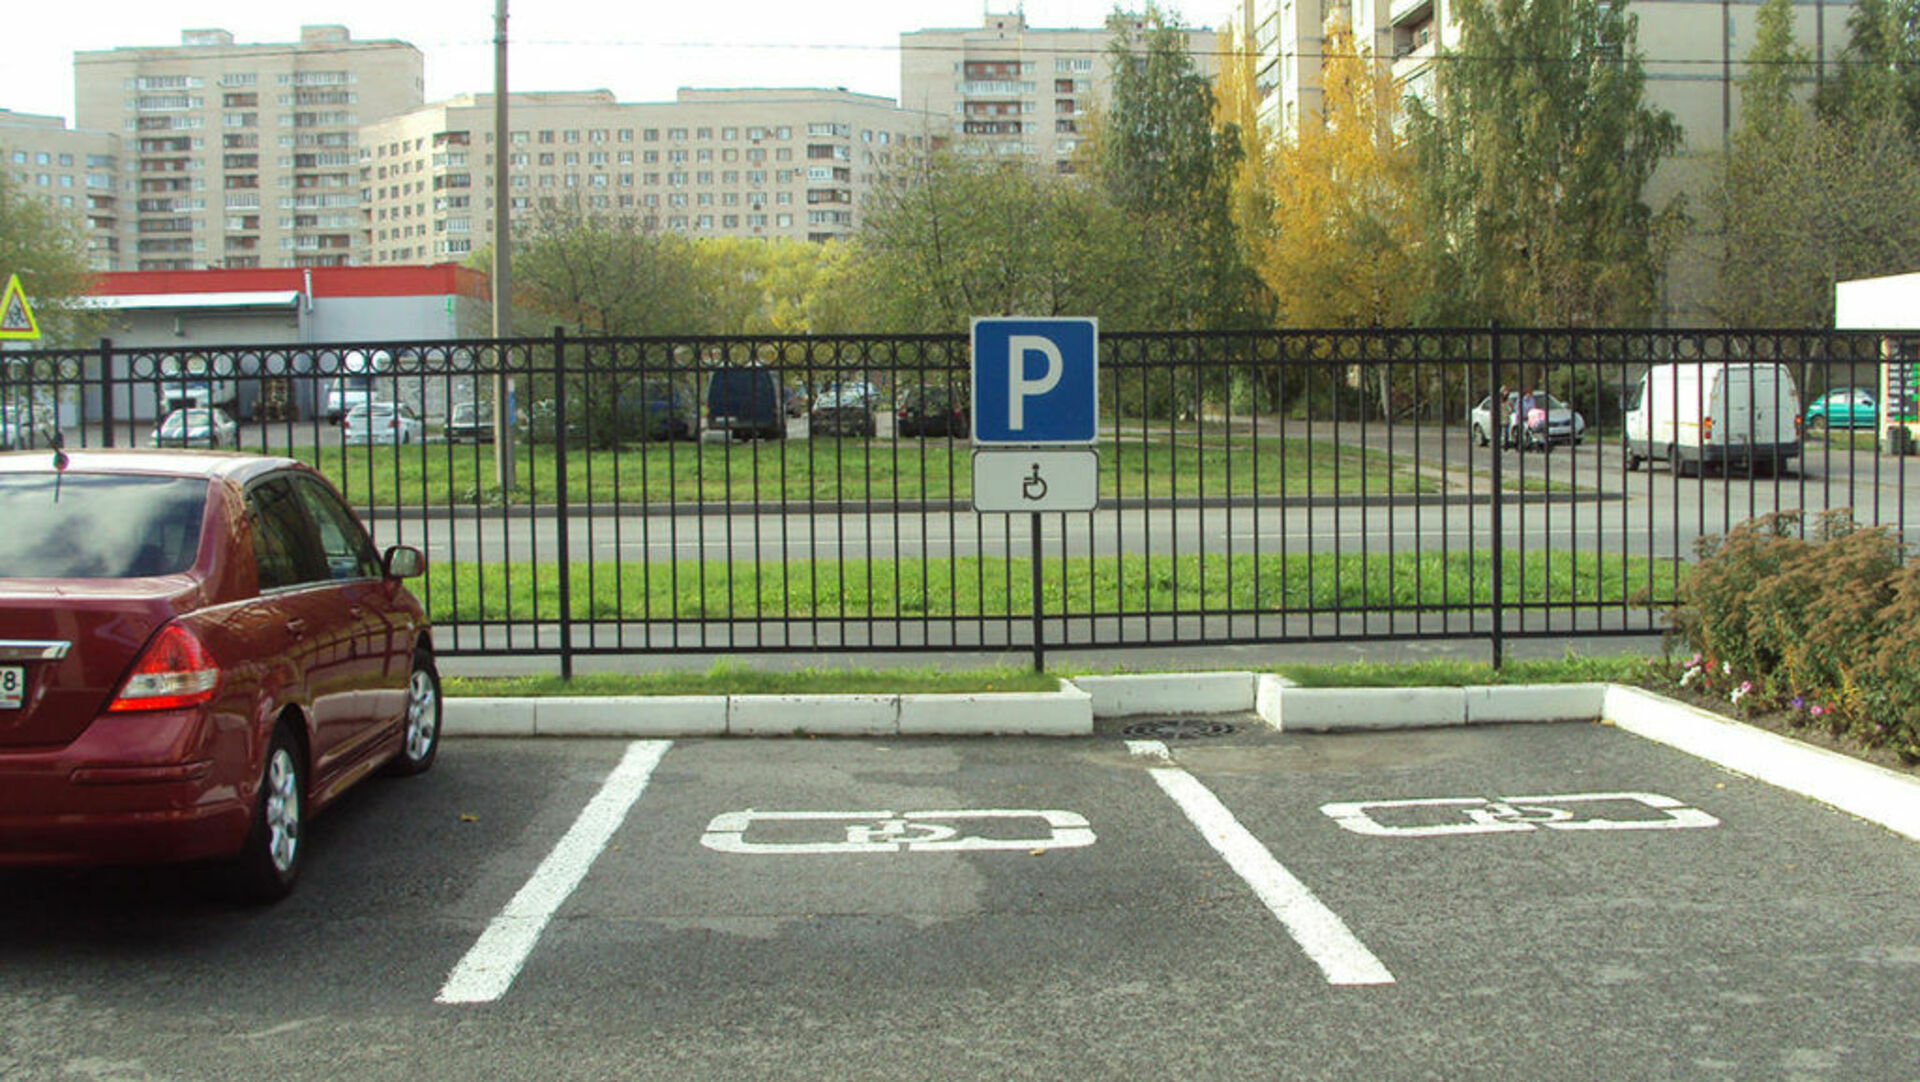 Каким инвалидам можно парковаться. Парковочное место для инвалидов. Стоянка автомобилей для инвалидов. Место для инвалидов на парковке. Инвалидный знаки на порковке.